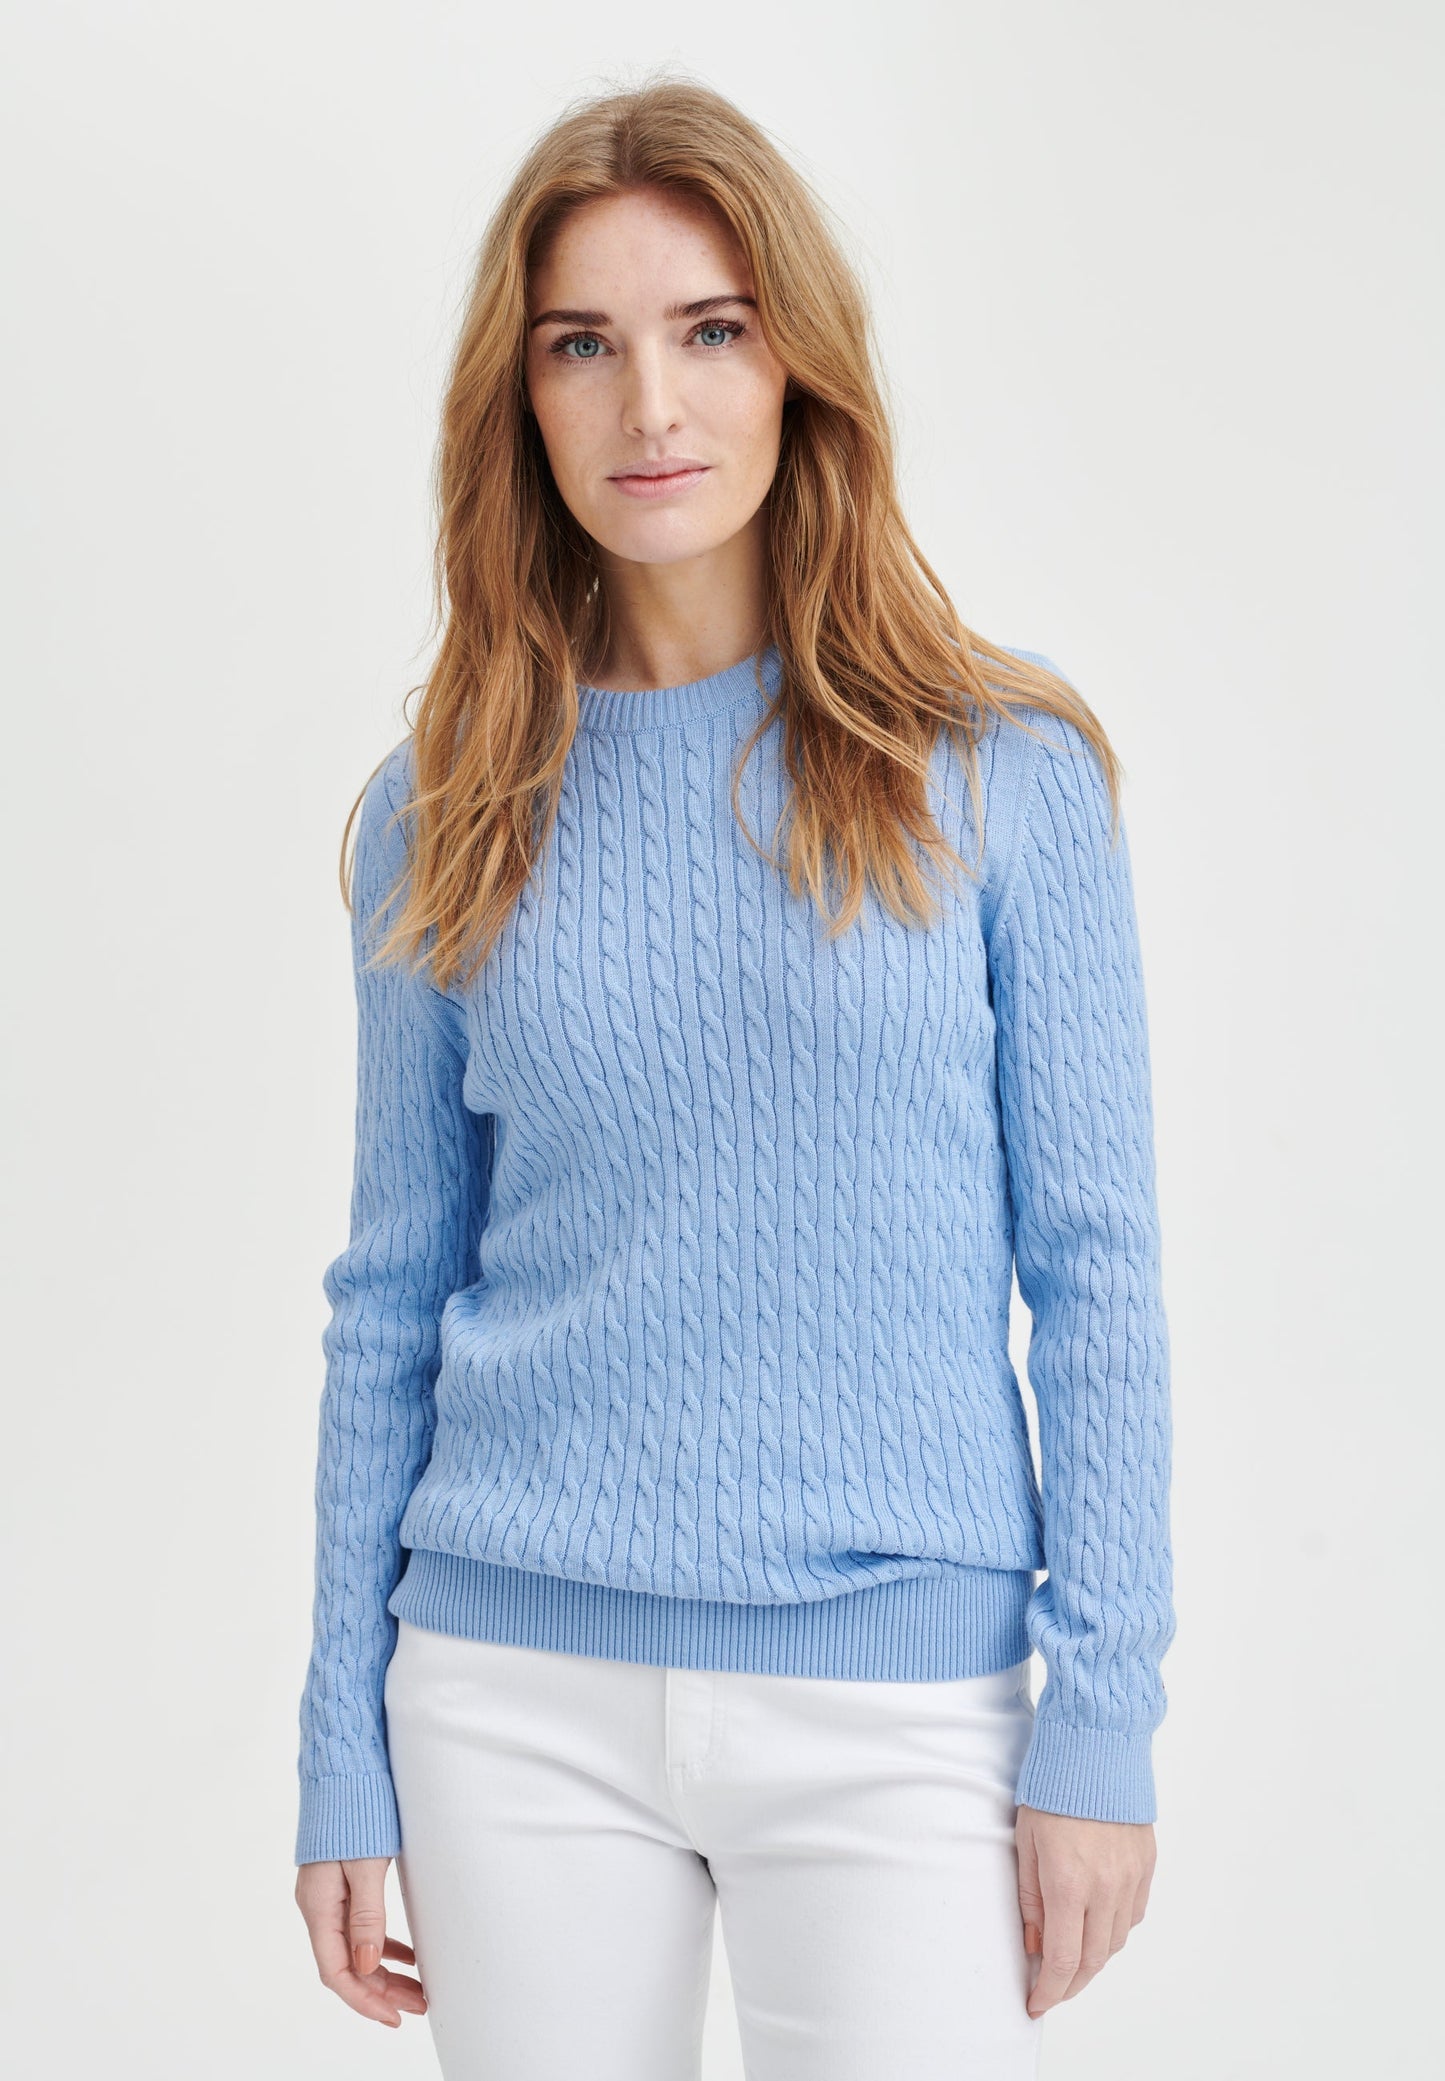 Simone cable knit light blue